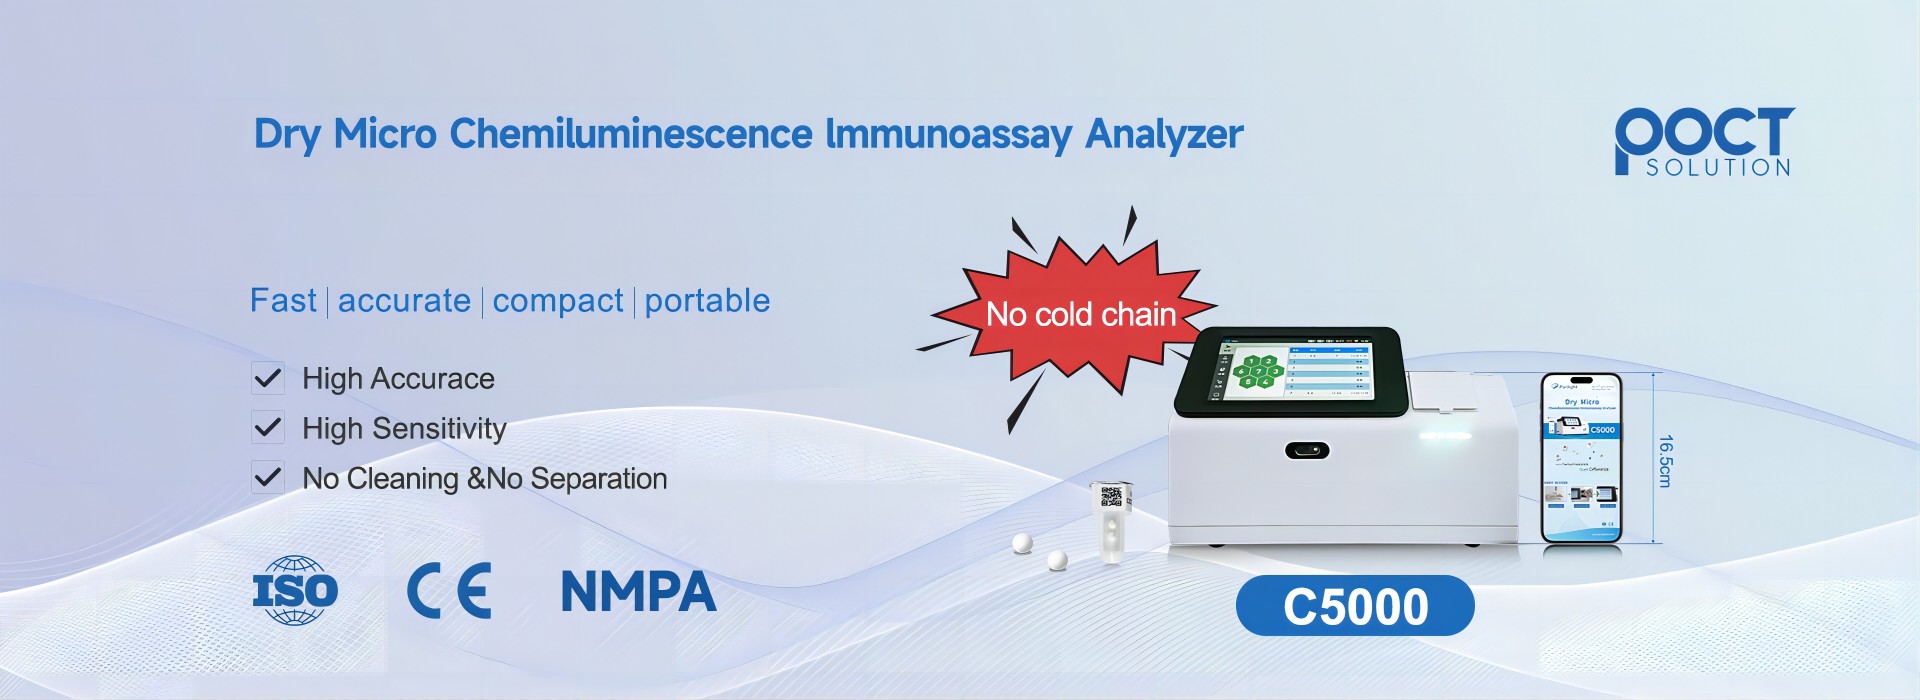 Kemilüminesans immünoassay analizörü ne için kullanılır?
        